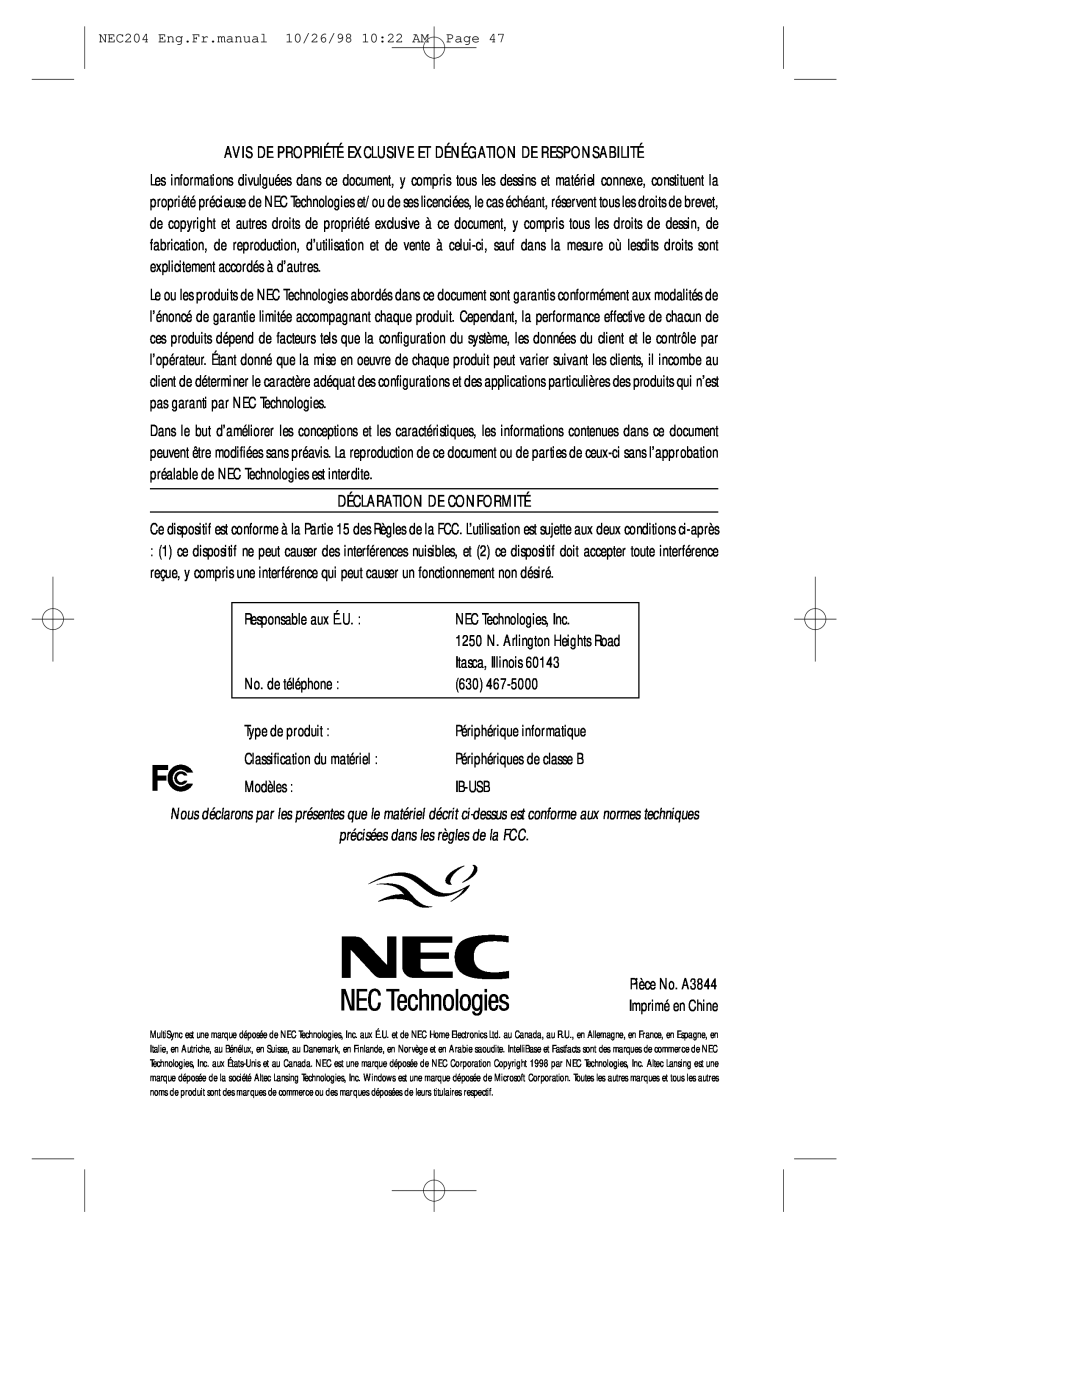 NEC A3844, IB-USB user manual Déclaration De Conformité 